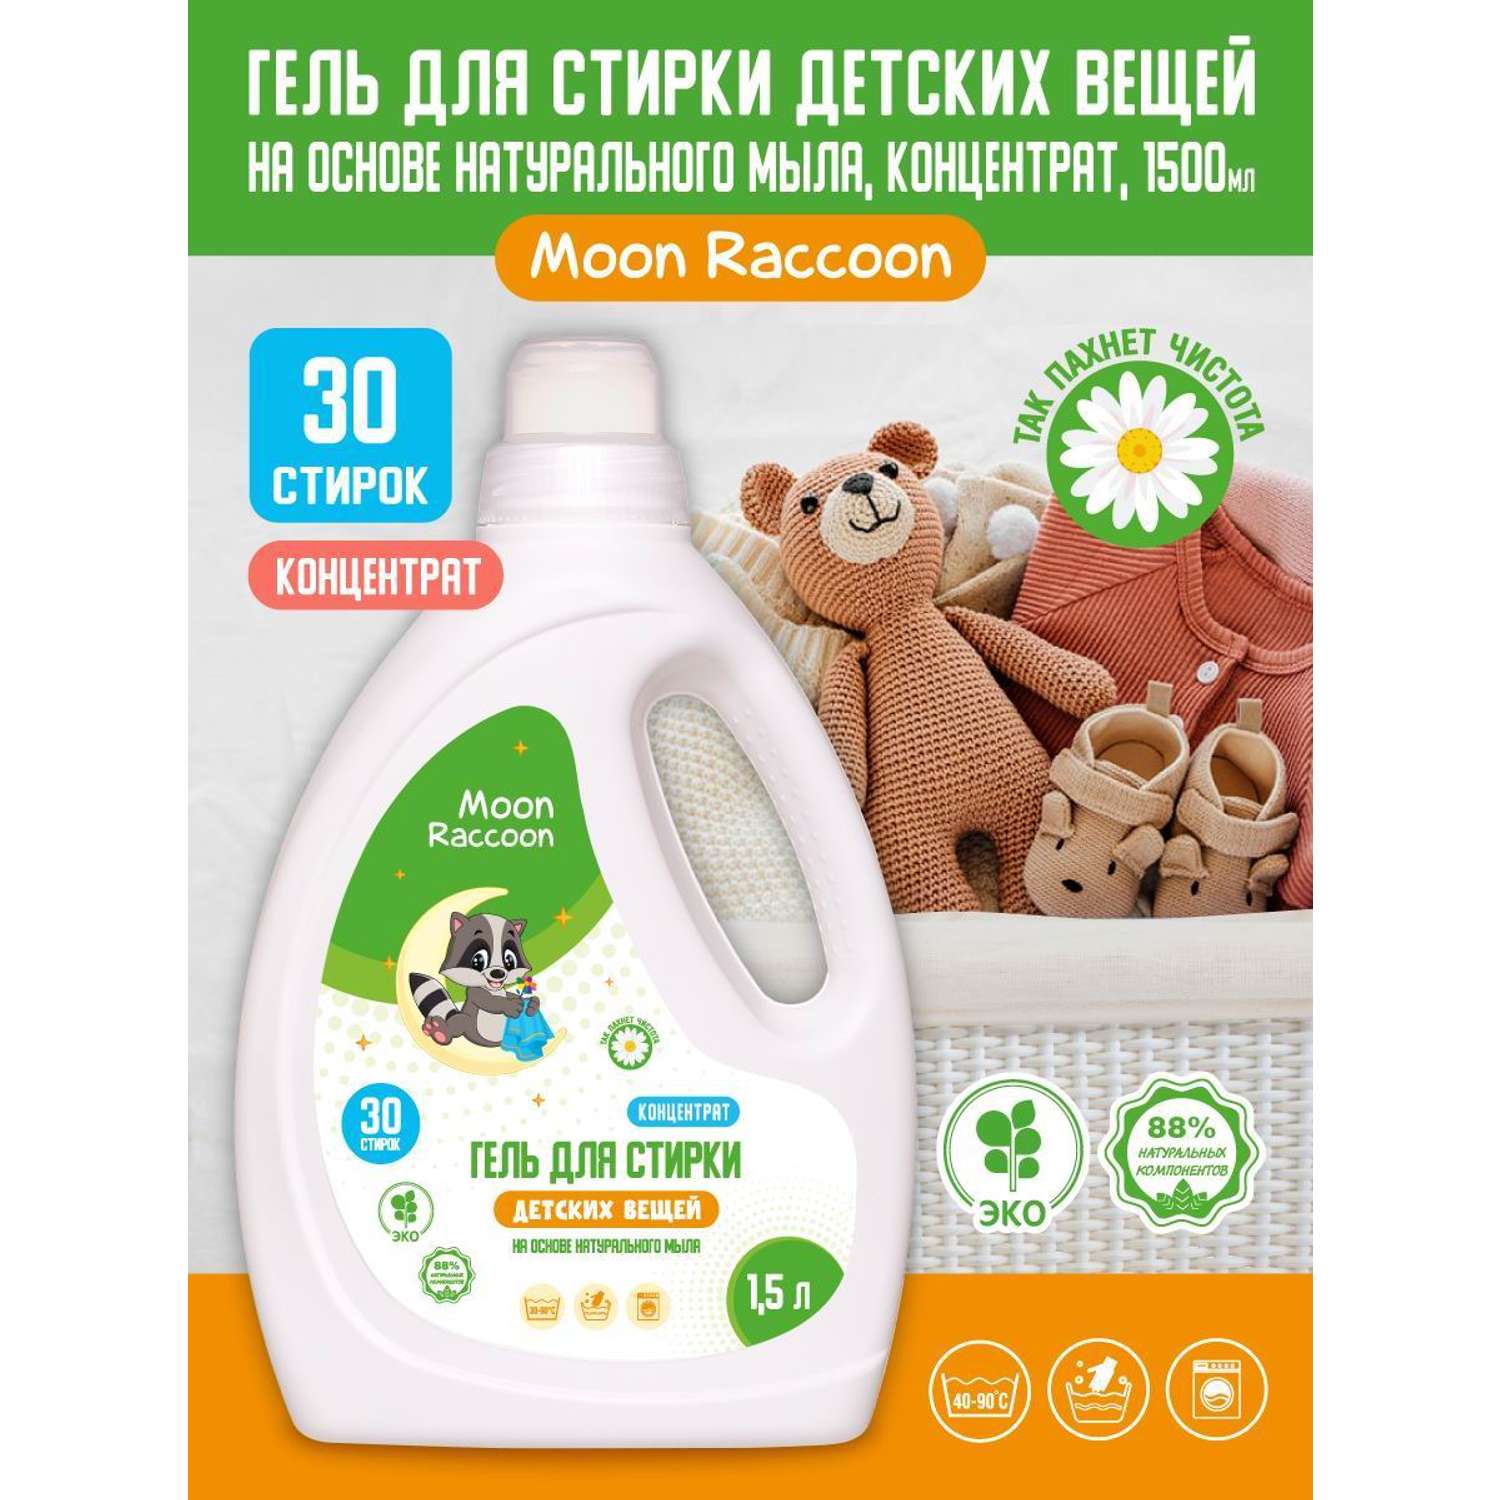 Гель для стирки Moon Raccoon Premium Care детский экологичный на основе натурального мыла концентрат 1500мл - фото 2